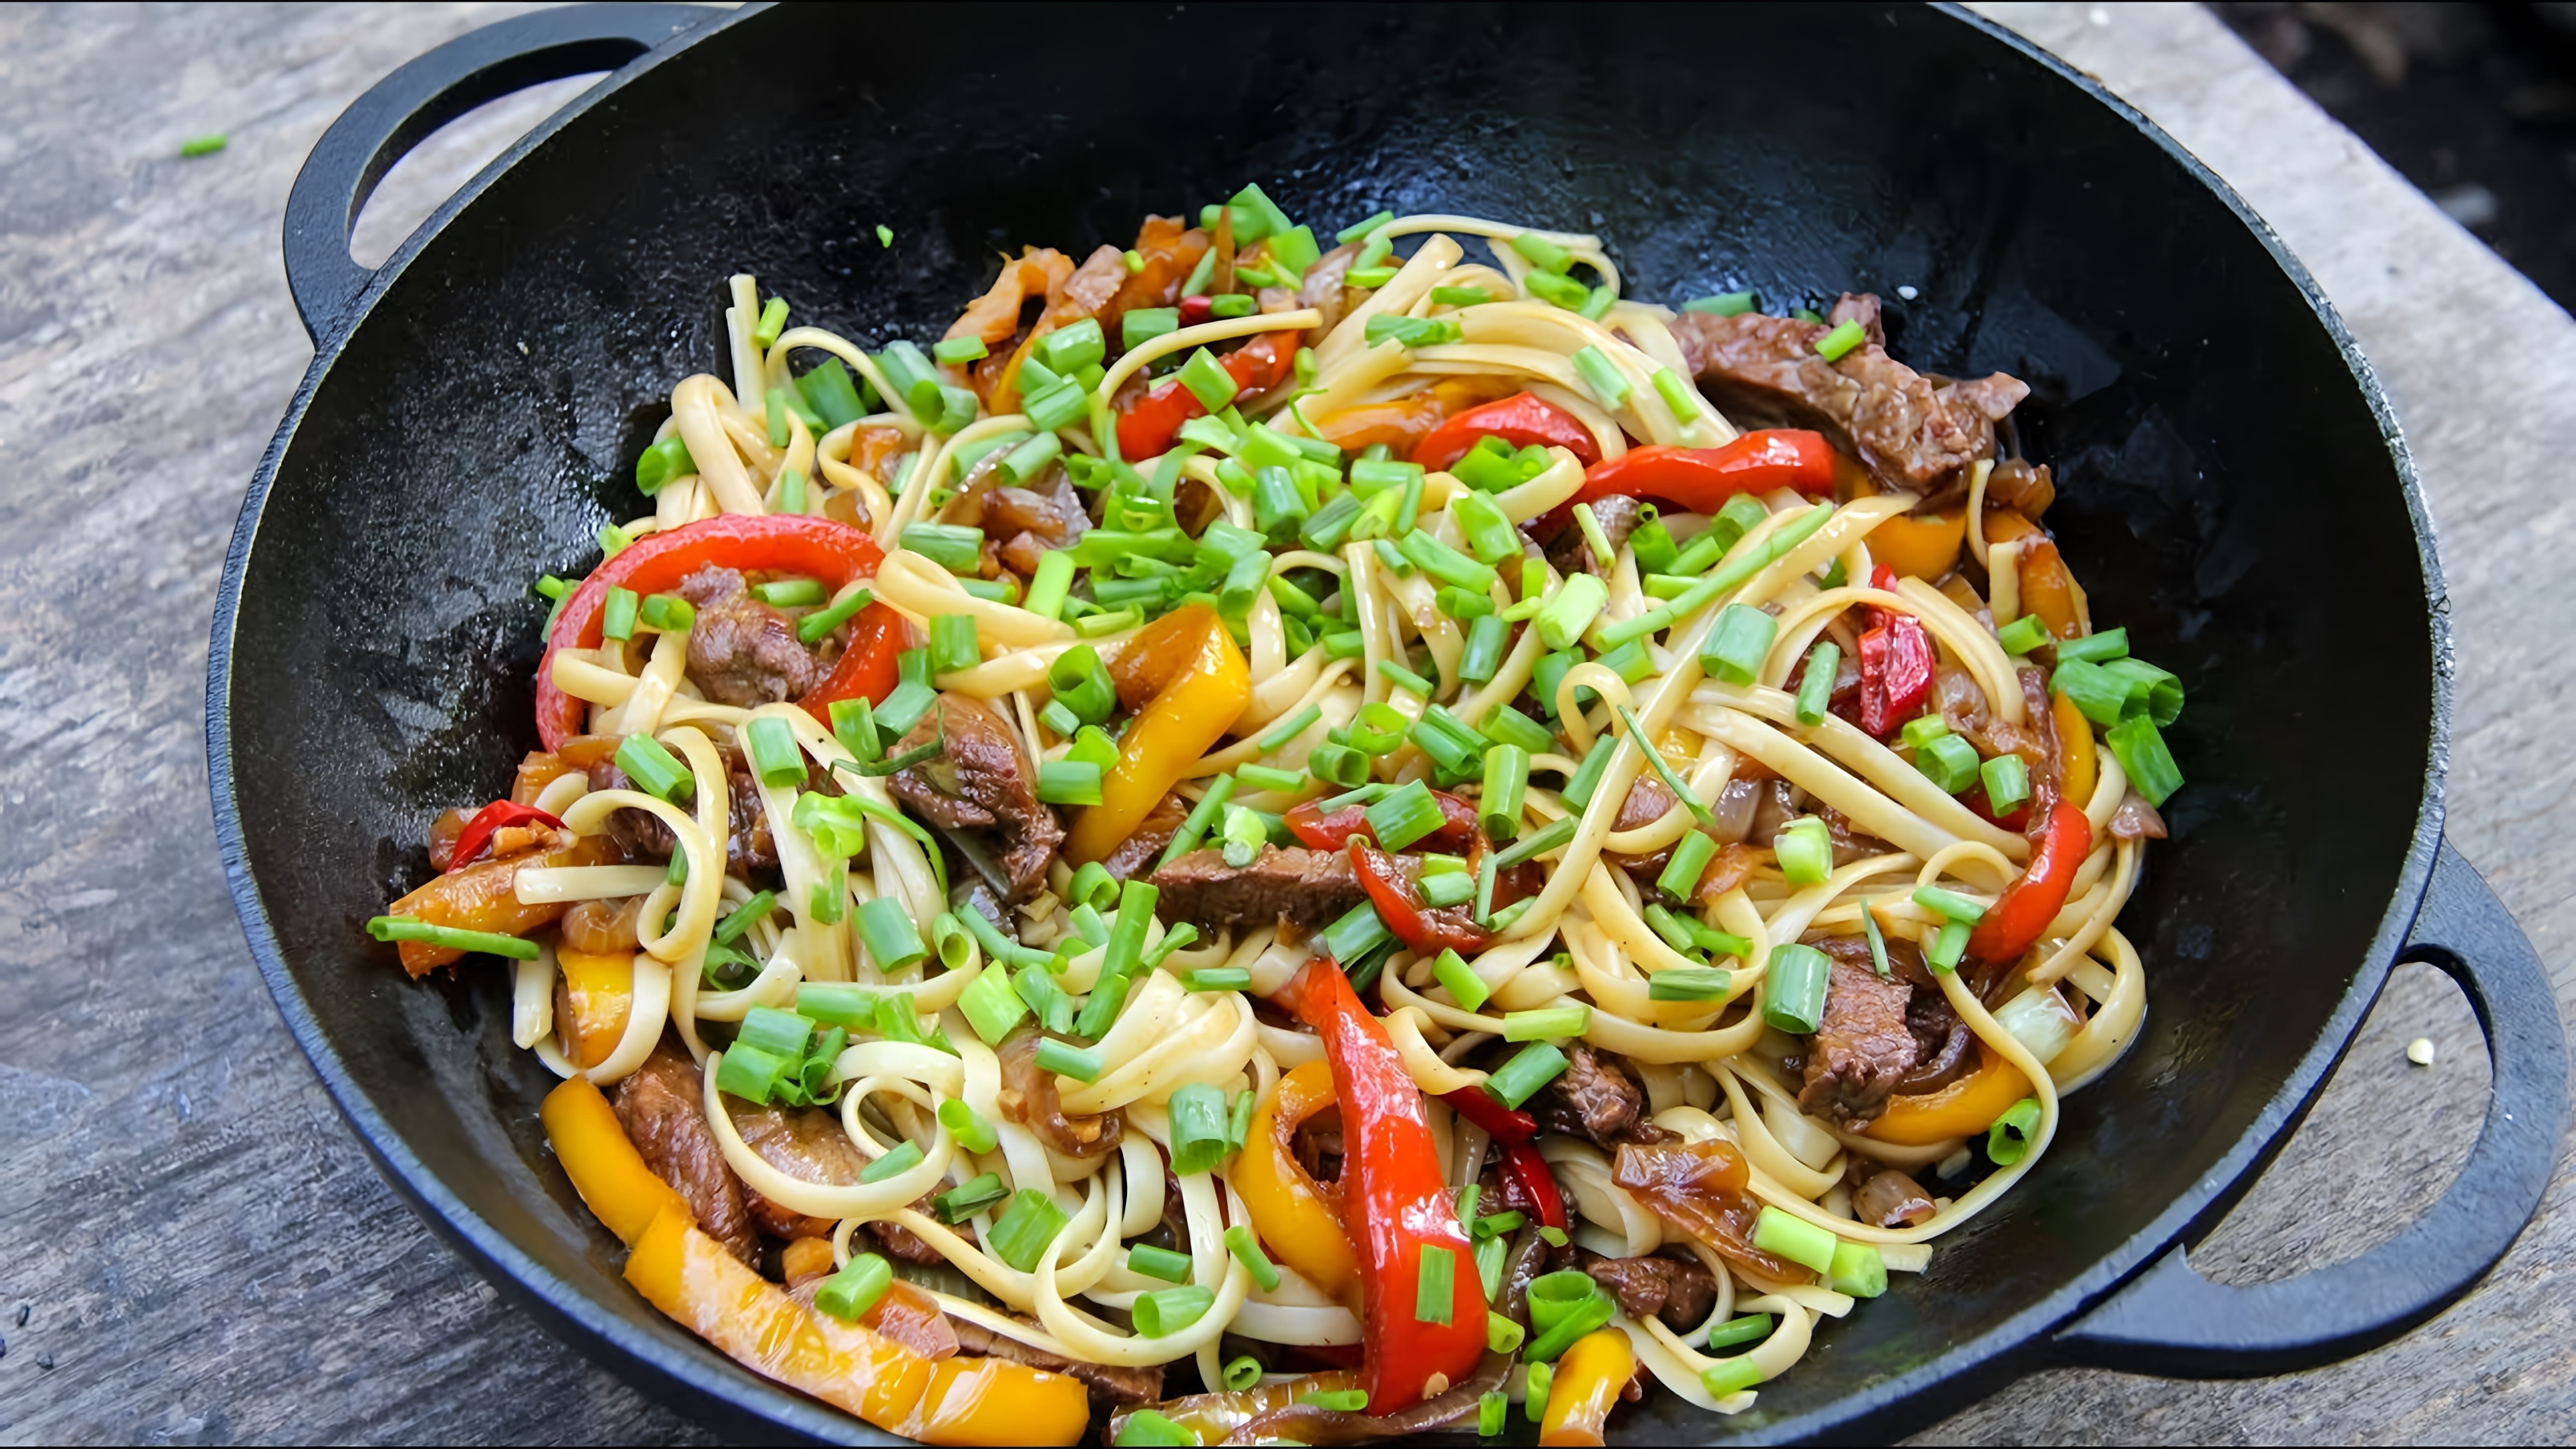 В этом видео демонстрируется рецепт приготовления китайской лапши wok с говядиной